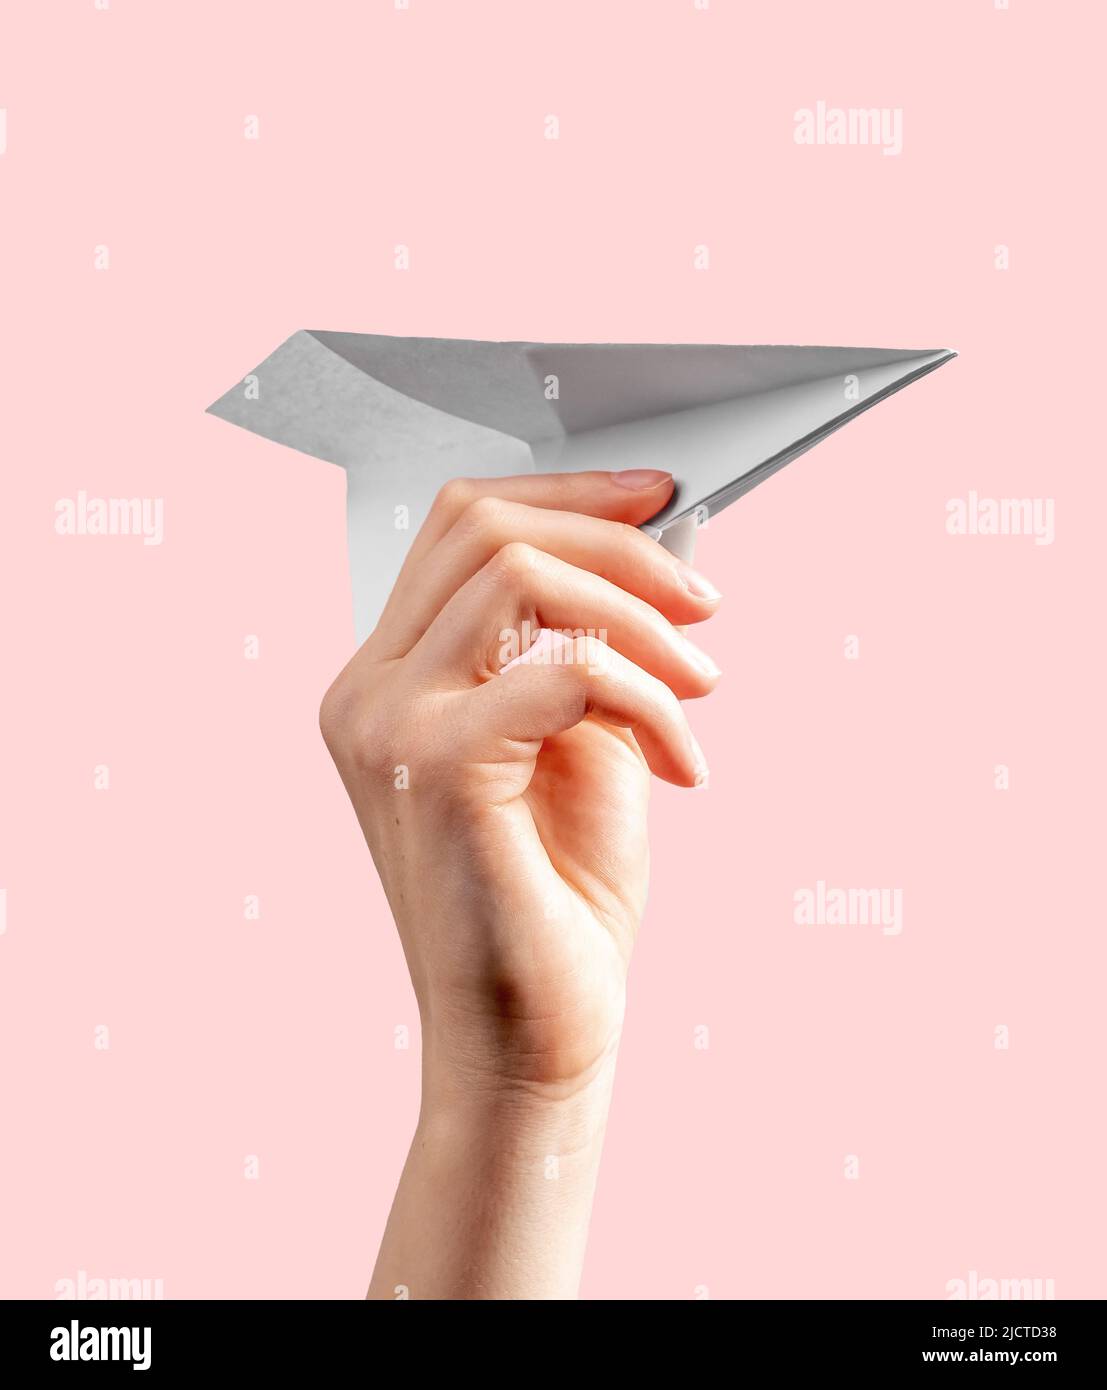 Frau Hand werfen Origami-Flugzeug auf rosa Hintergrund. Symbol für Kindheit, Freiheit, Phantasie, Kreativität. Papier Falten Kunst. Hochwertige Foto Stockfoto